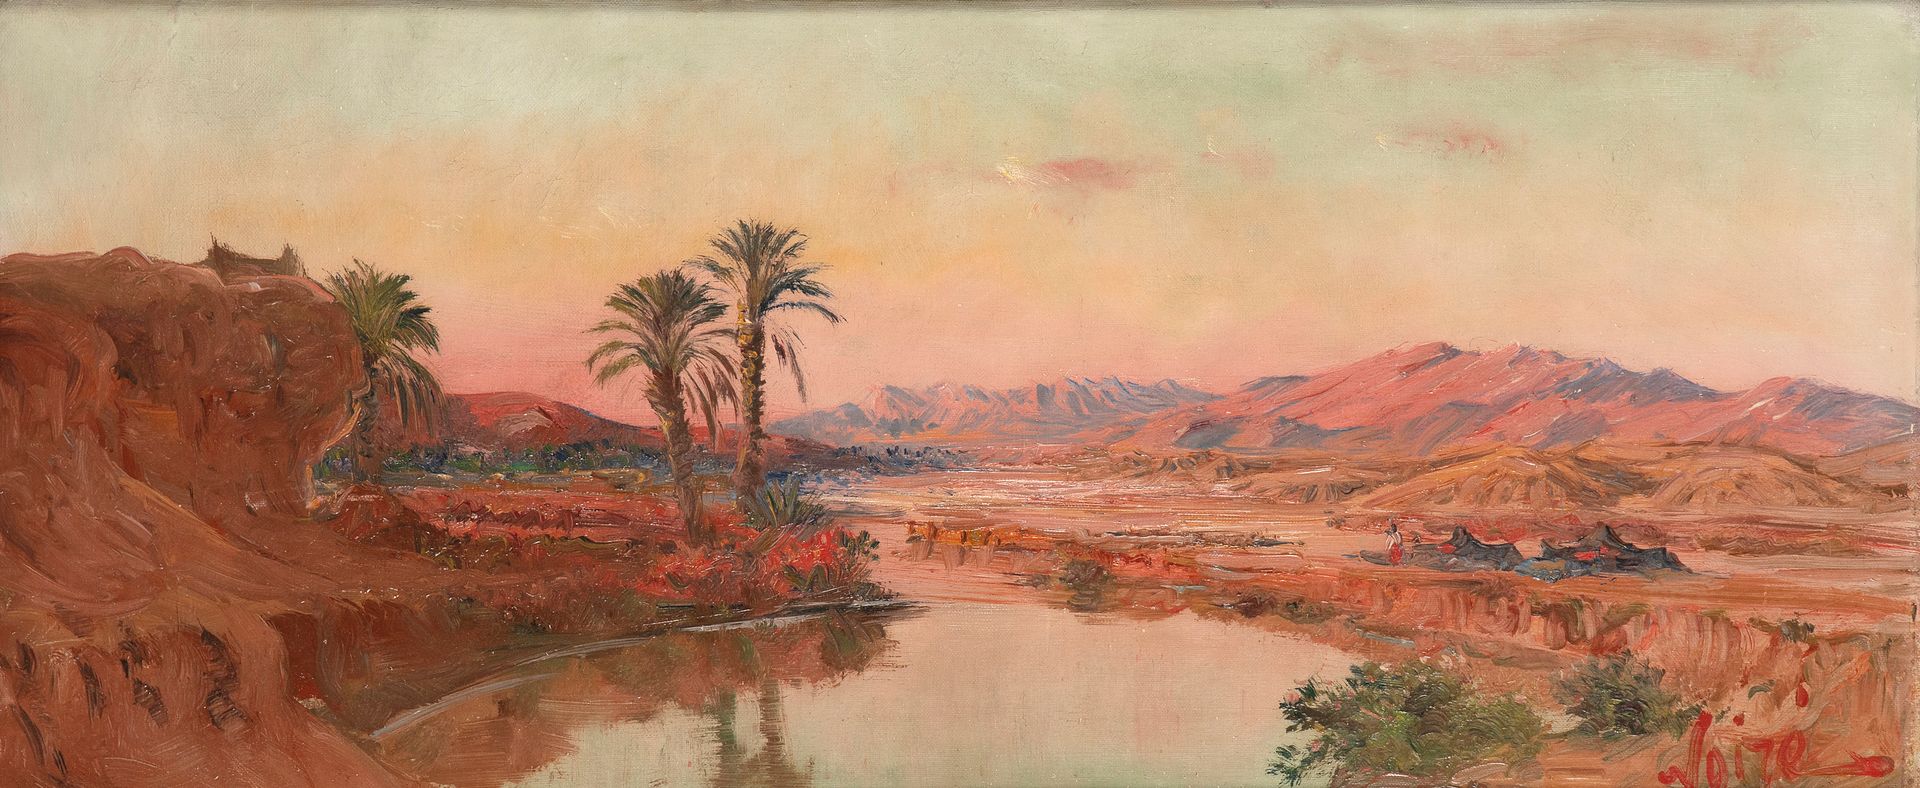 Maxime NOIRE (Guinglange 1861-Alger 1927) Das Lager am Ufer des Wadis, Algerien
&hellip;